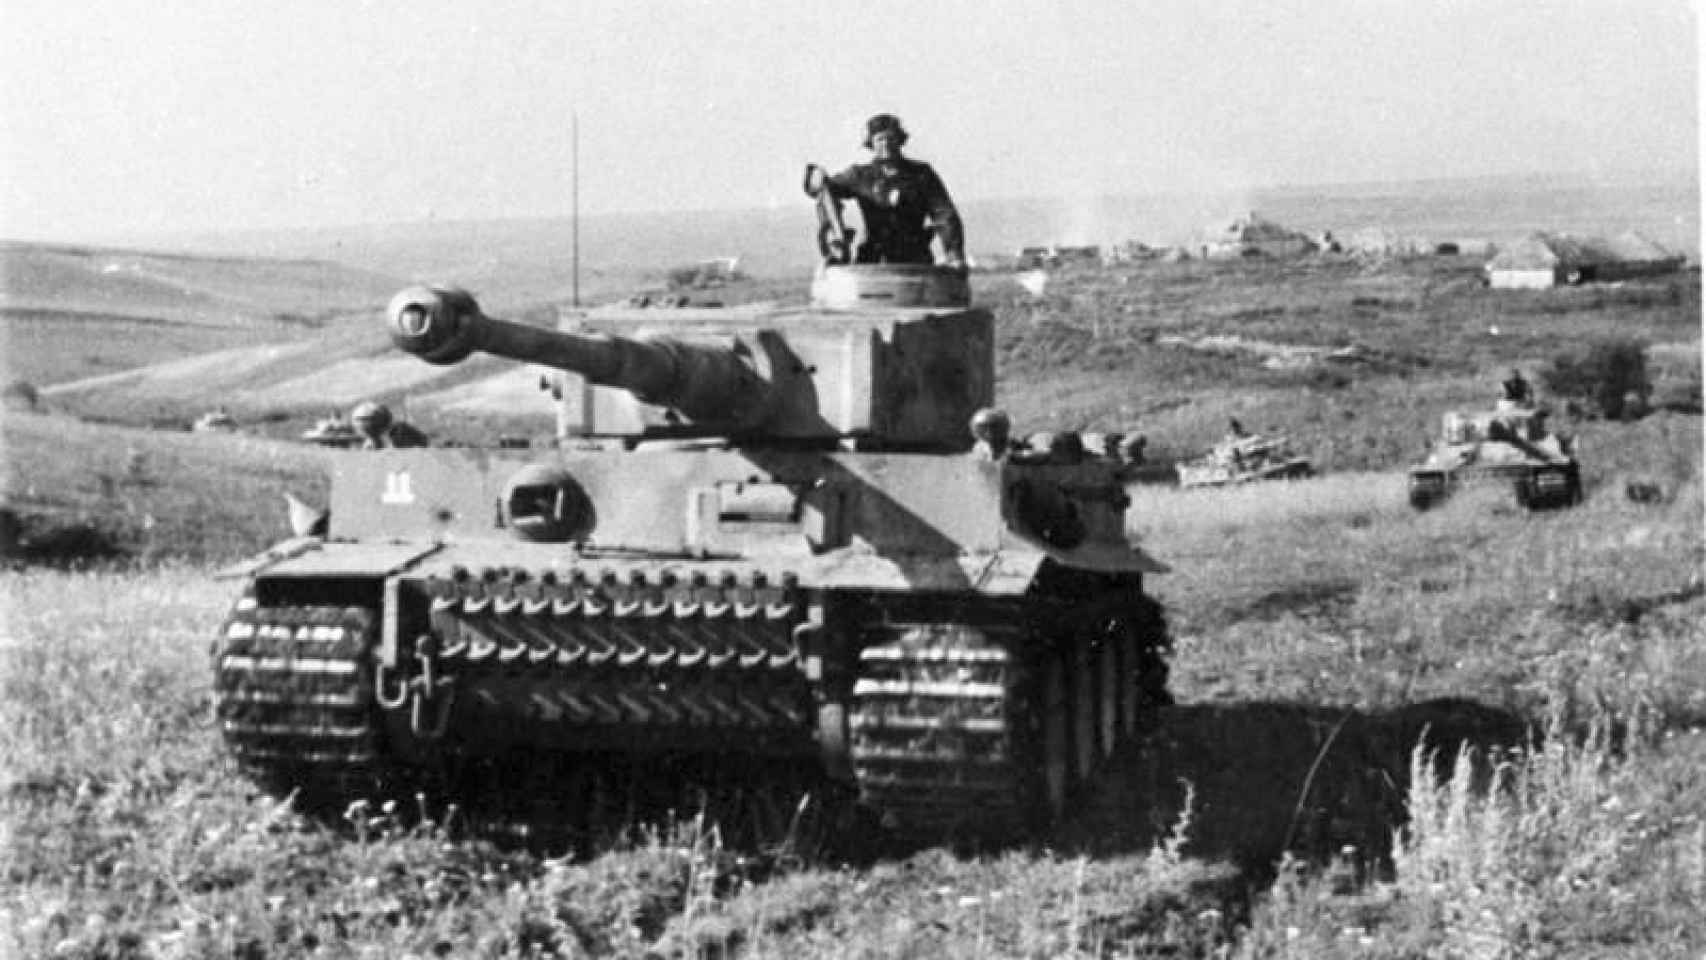 Panzer VI Tiger, tanque desarrollado en 1941 por los alemanes.